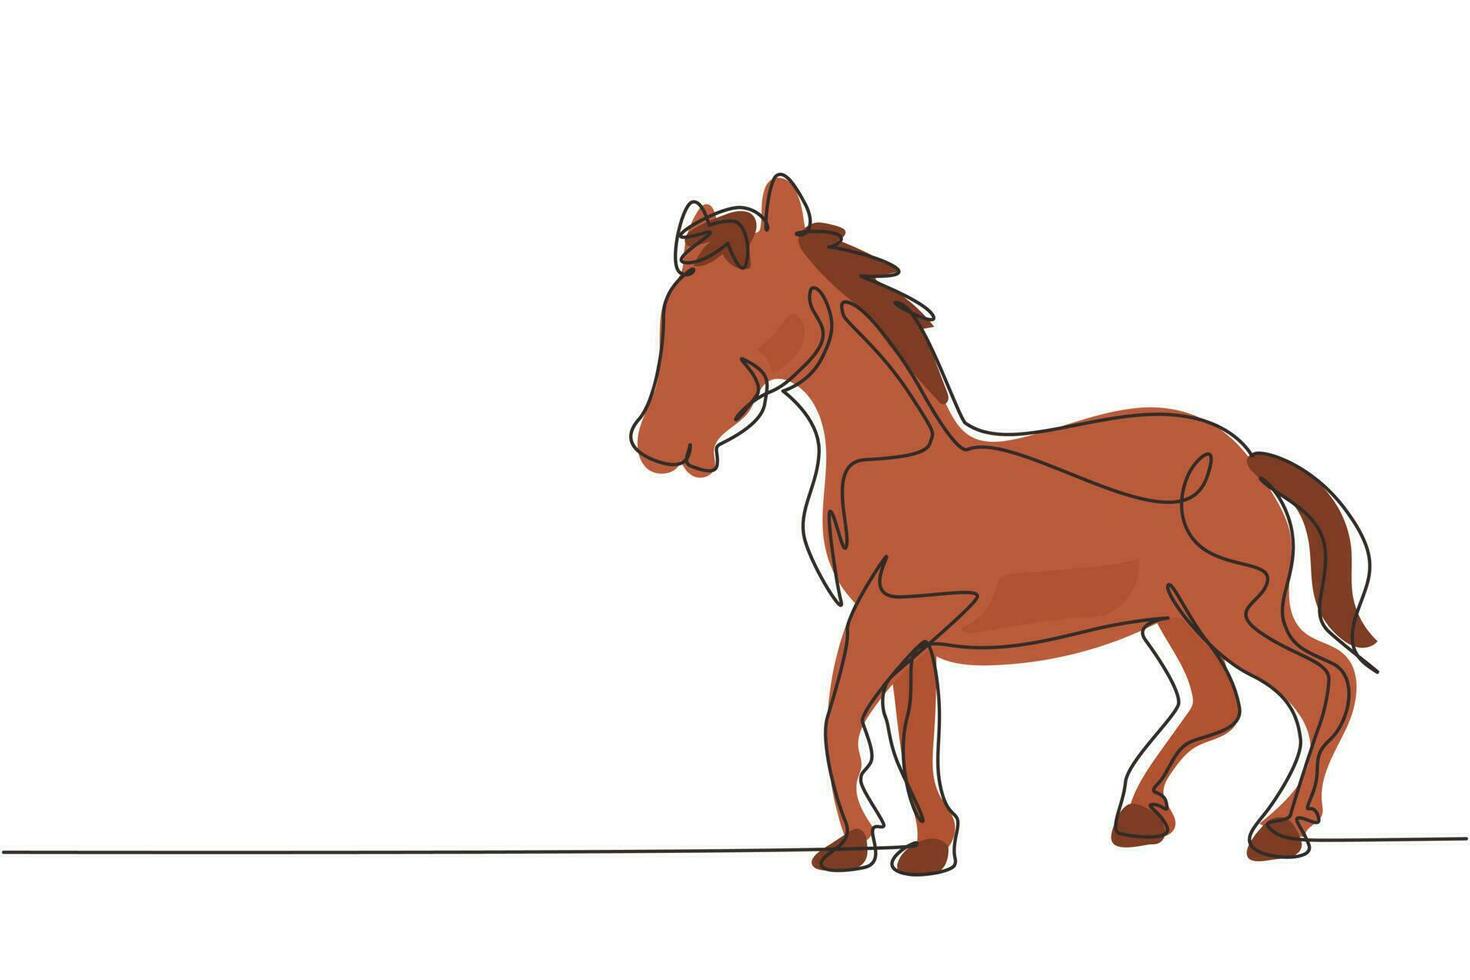 dibujo de una sola línea continua orgulloso caballo blanco camina con gracia con su pezuña delantera hacia adelante. mustang salvaje galopa en la naturaleza libre. caballo domesticado. ilustración de vector de diseño gráfico de dibujo de una línea